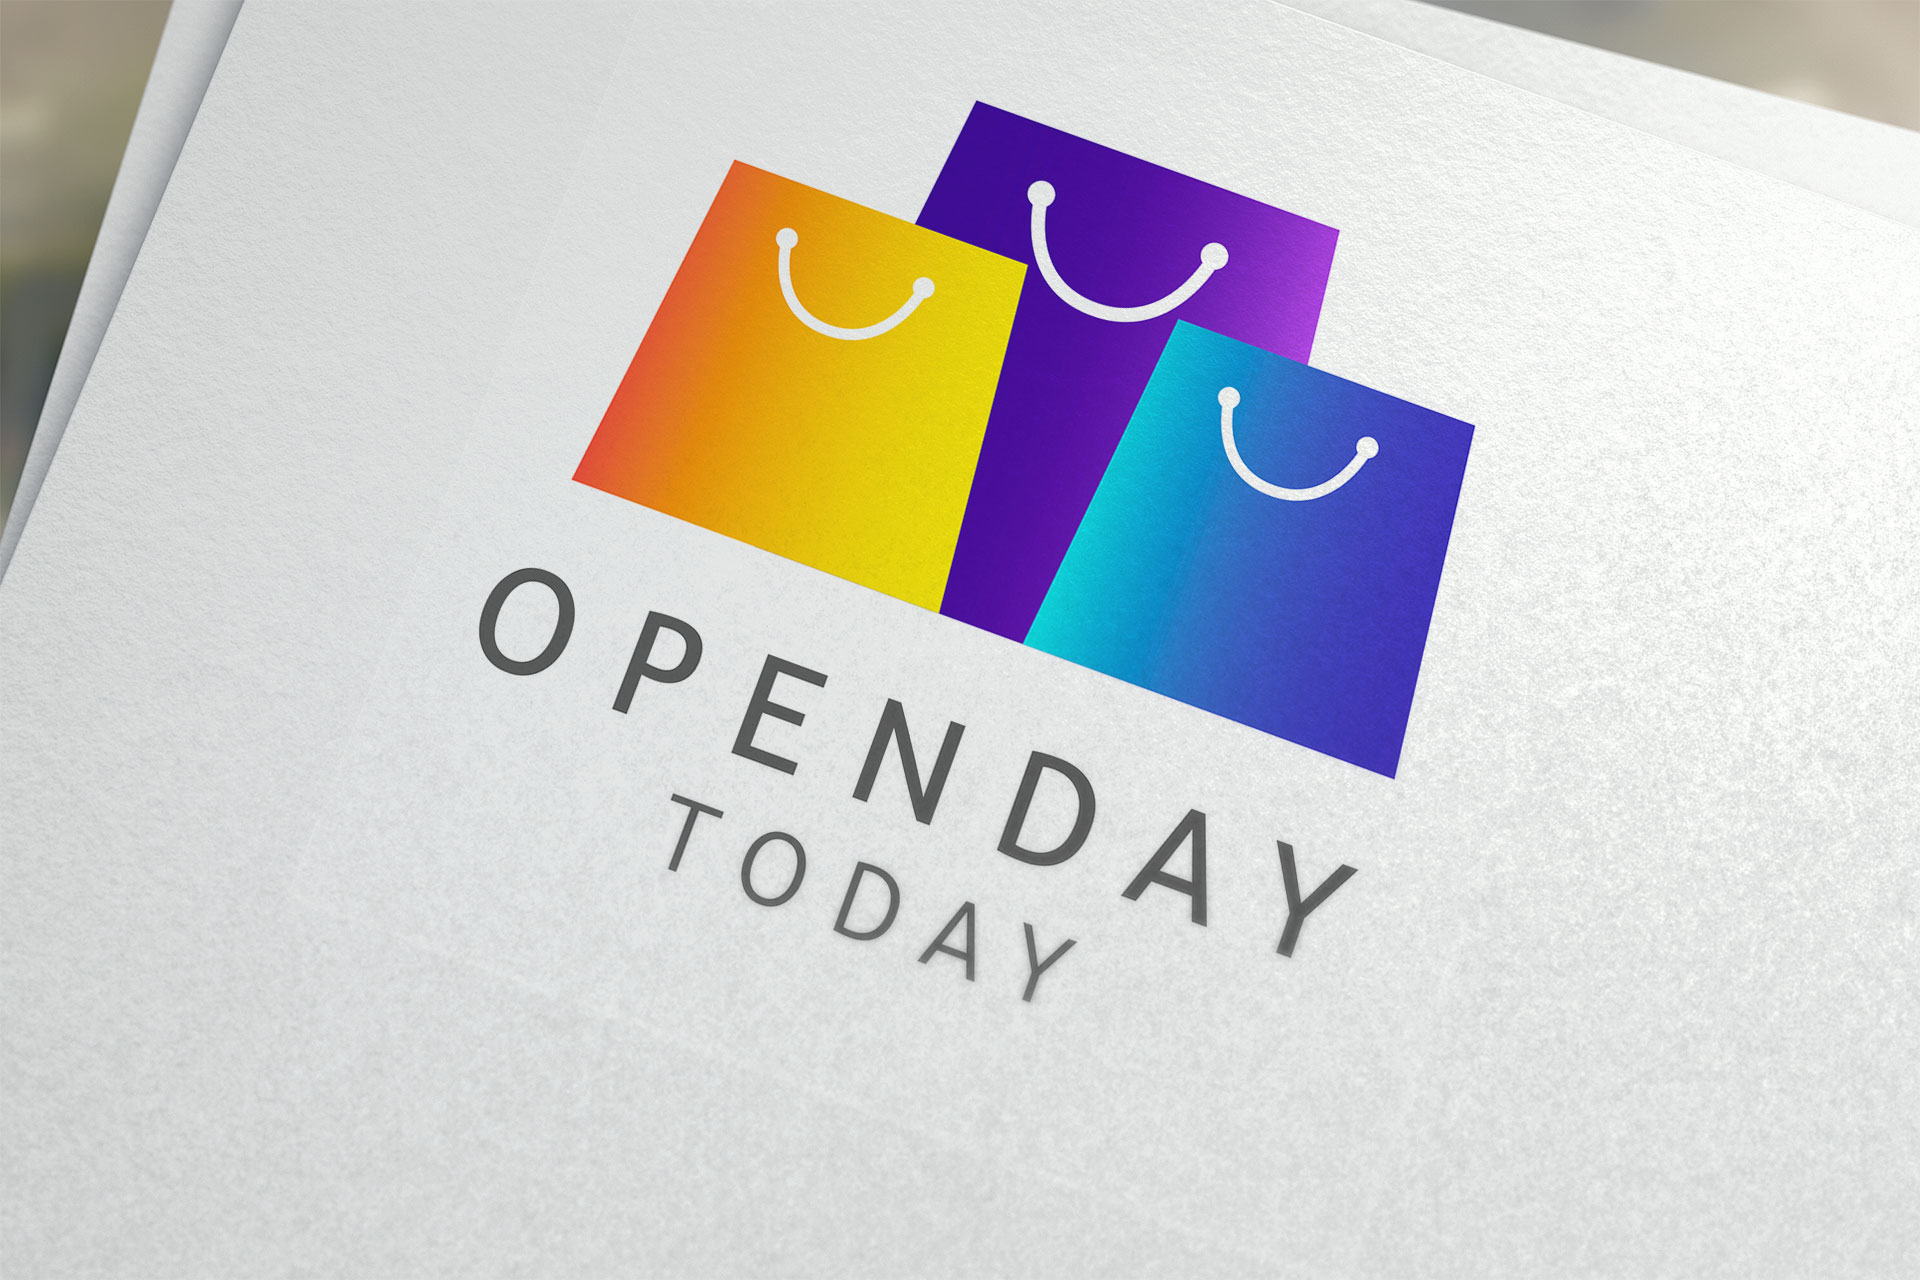 Openday logo